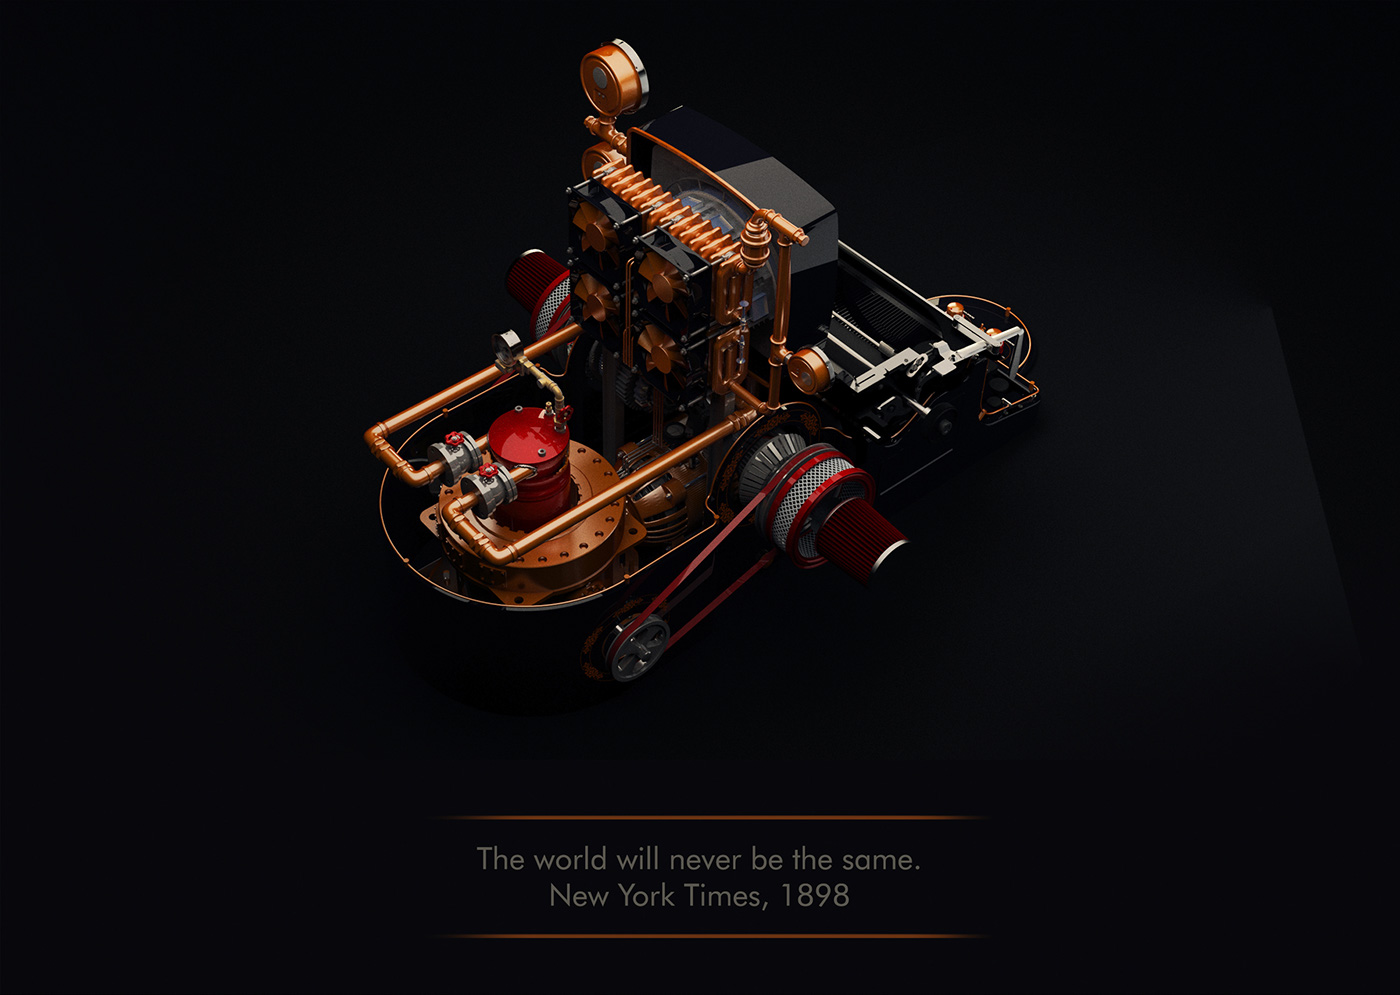 STEAMPUNK Victorian Age стимпанк механизмы mechanism machine машины Style